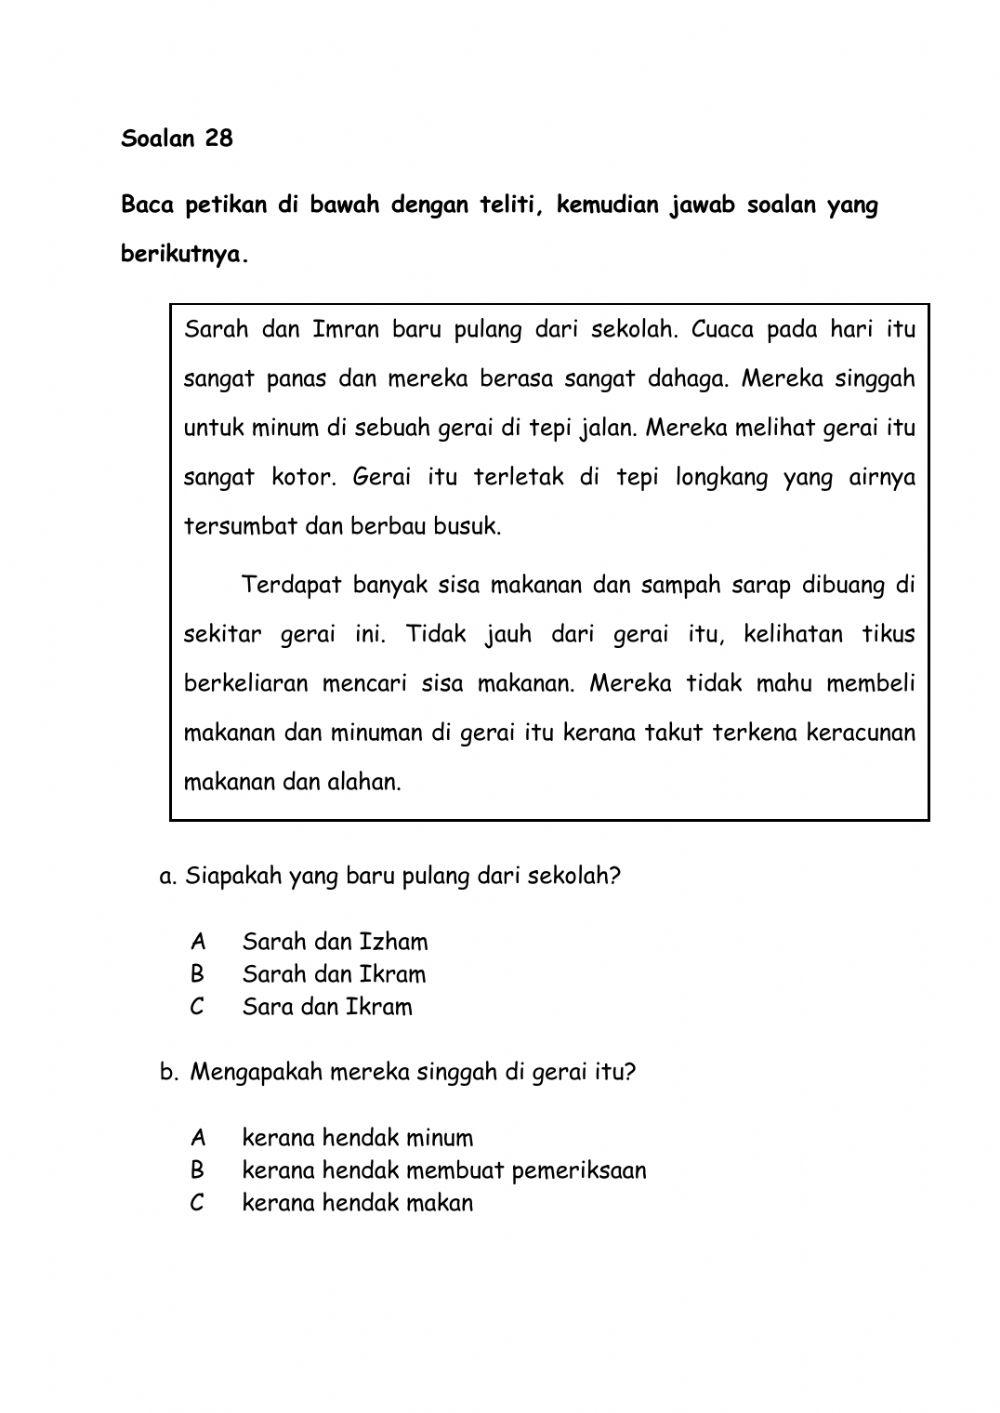 Ujian Penilaian Bahasa Melayu (Bahagian B)